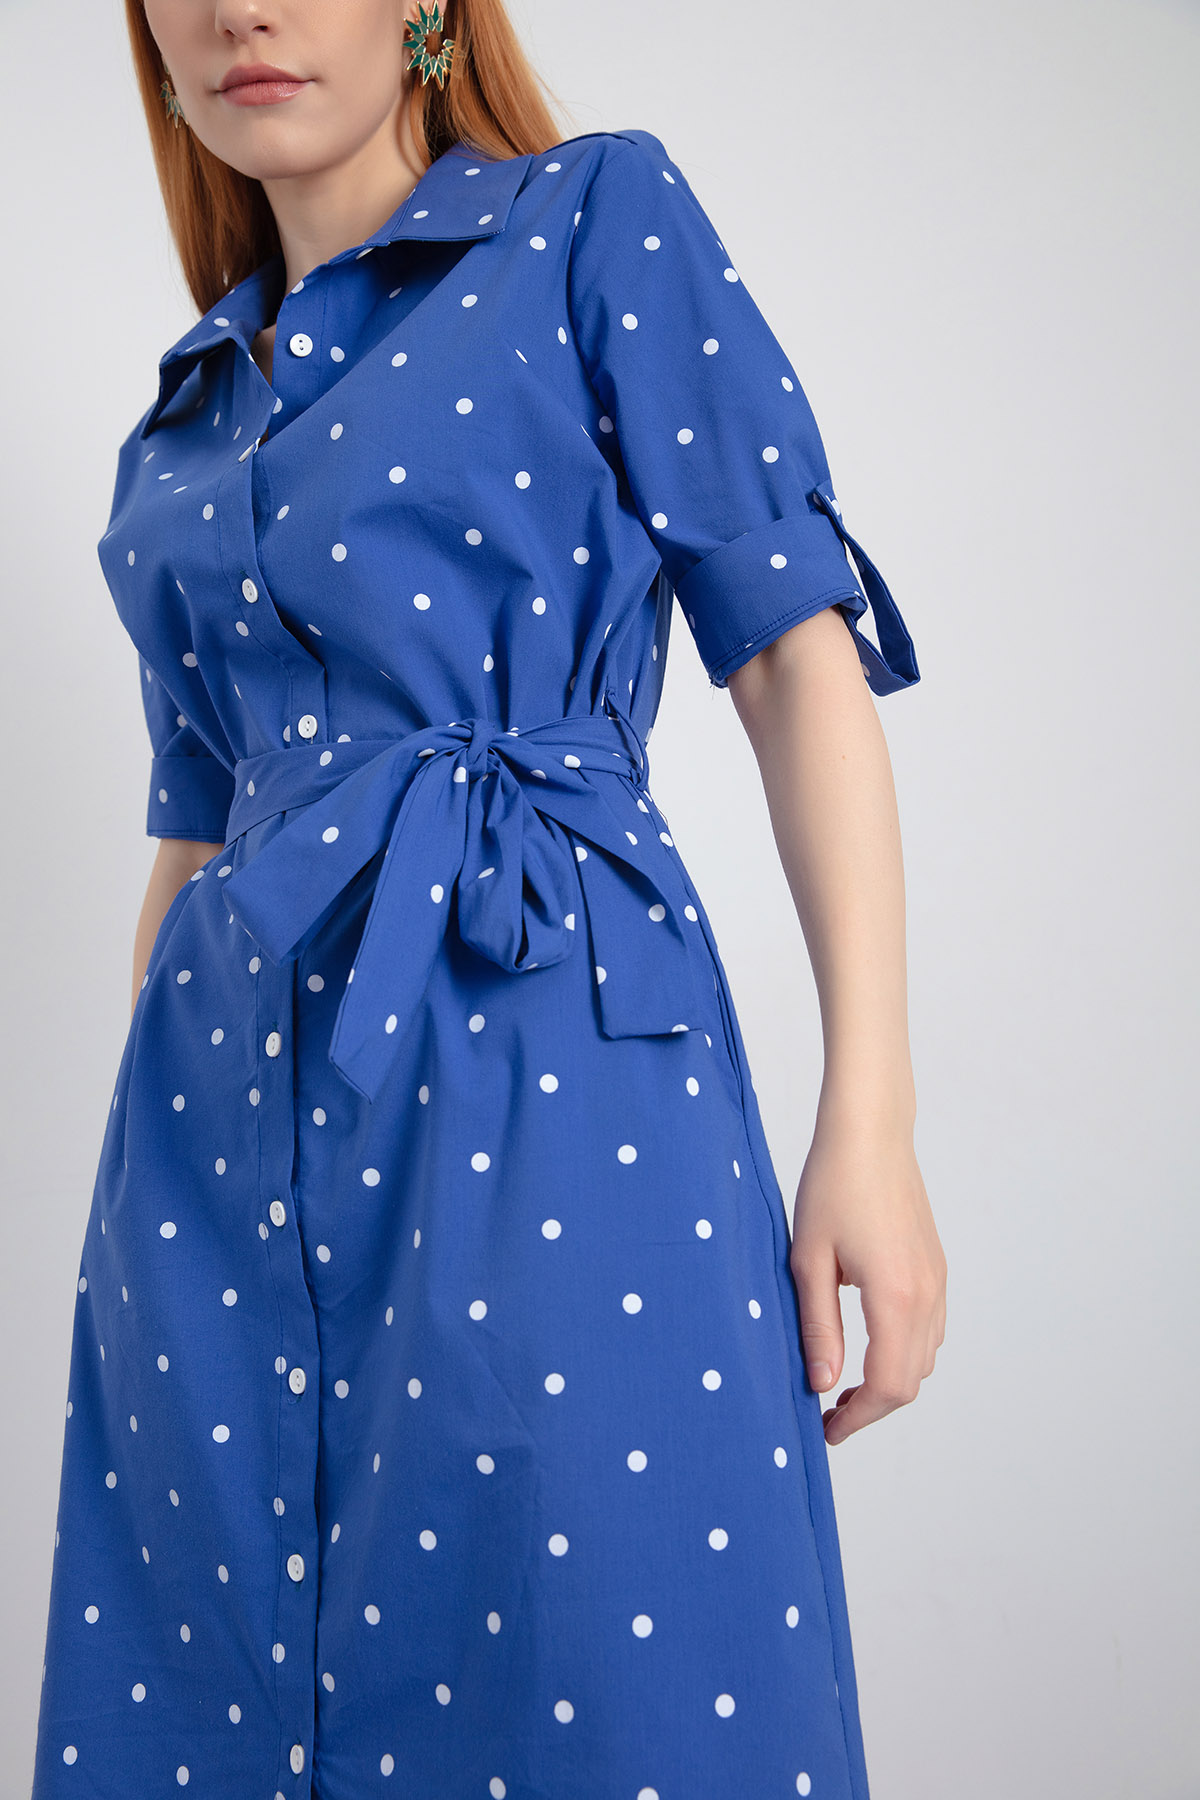 Women's Blue Polka Dot Patterned Dress